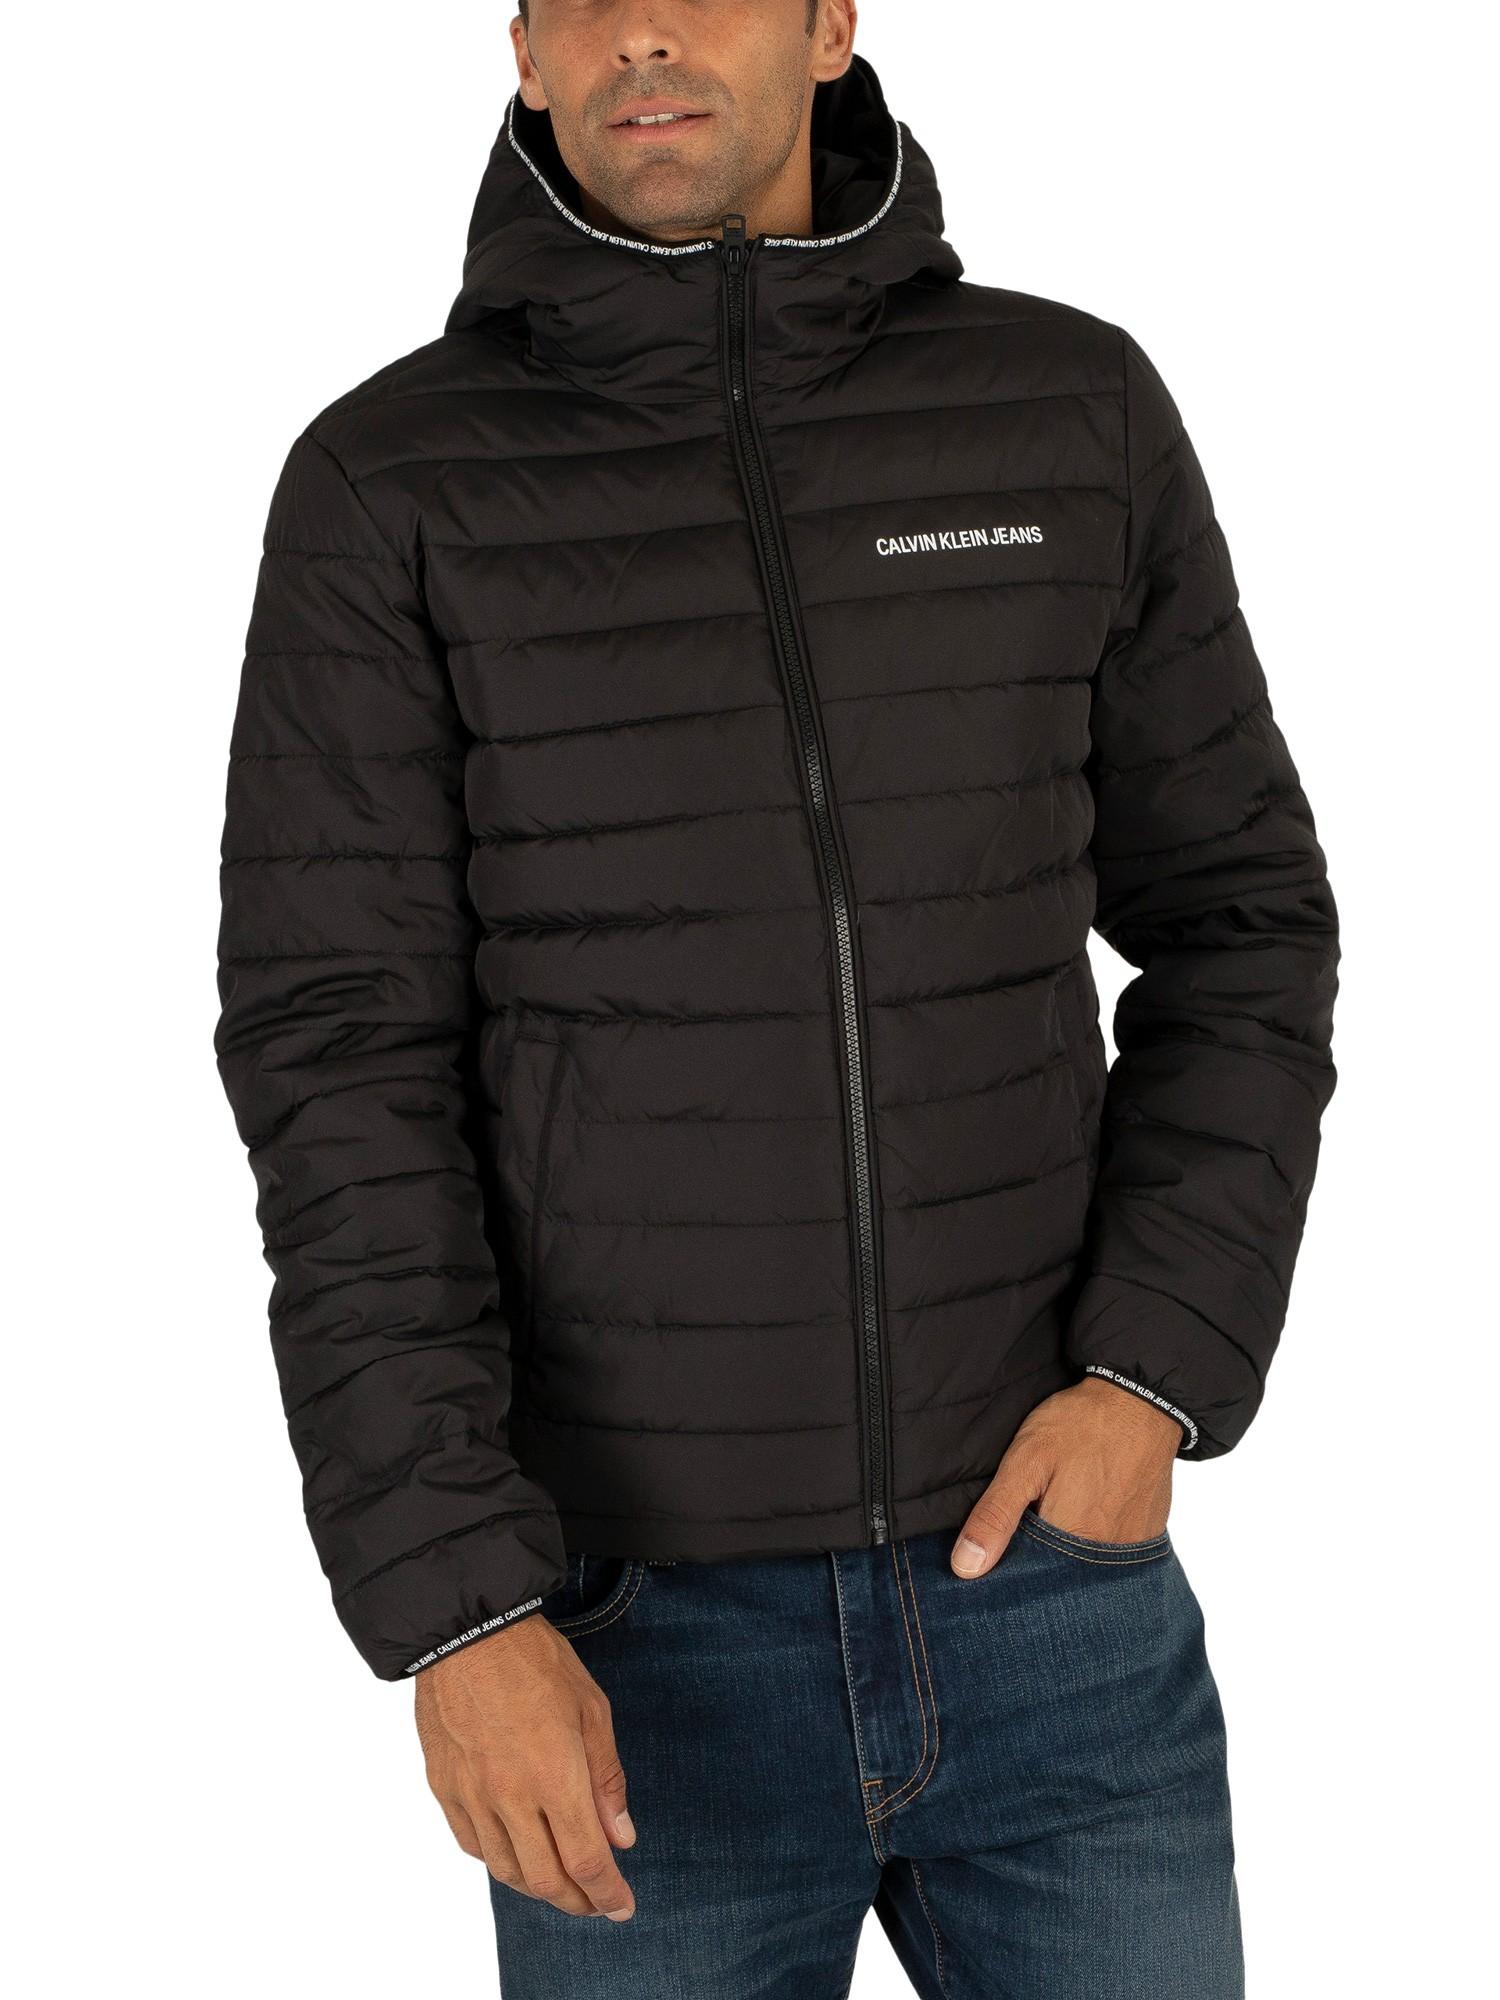 Calvin Klein Denim Padded Hooded Jacket in Black for Men - Lyst